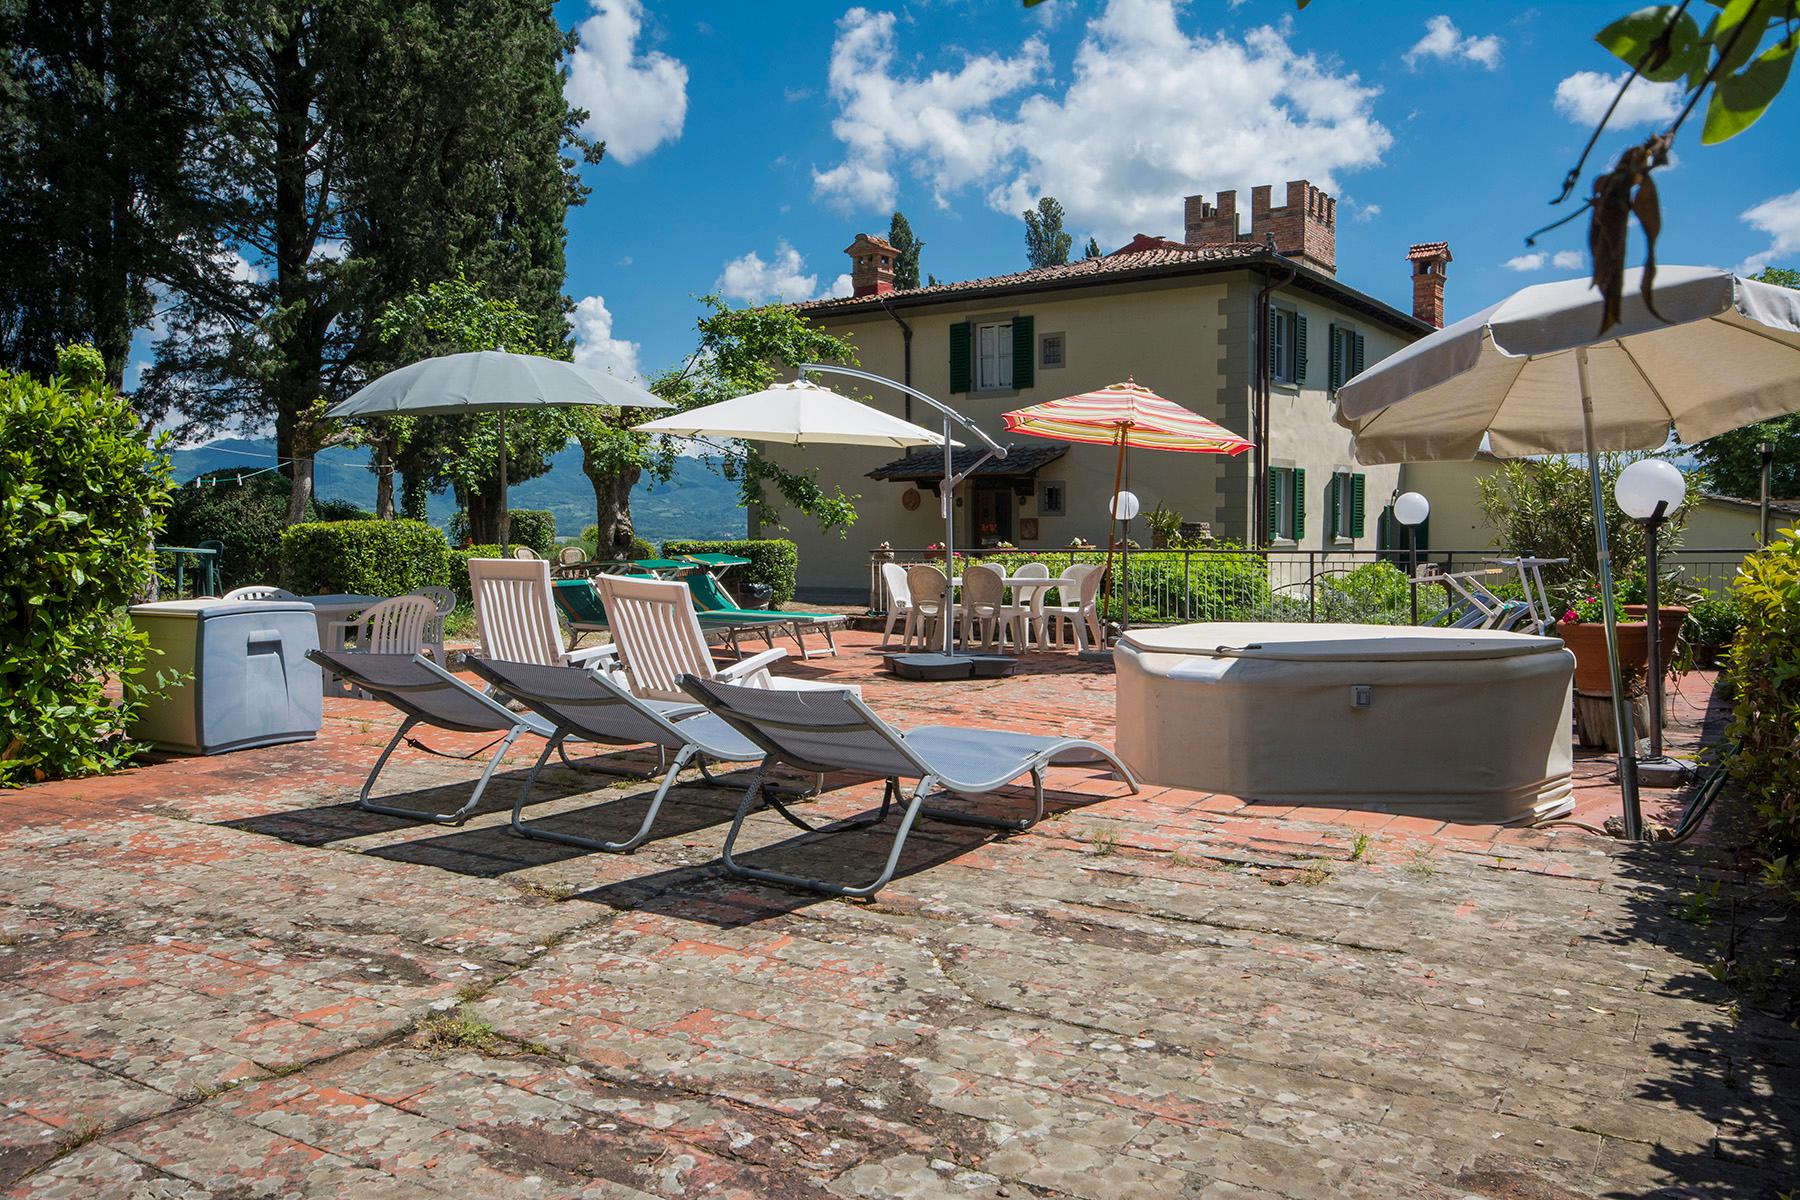 Fascinating villa in the Val di Sieve area - 5